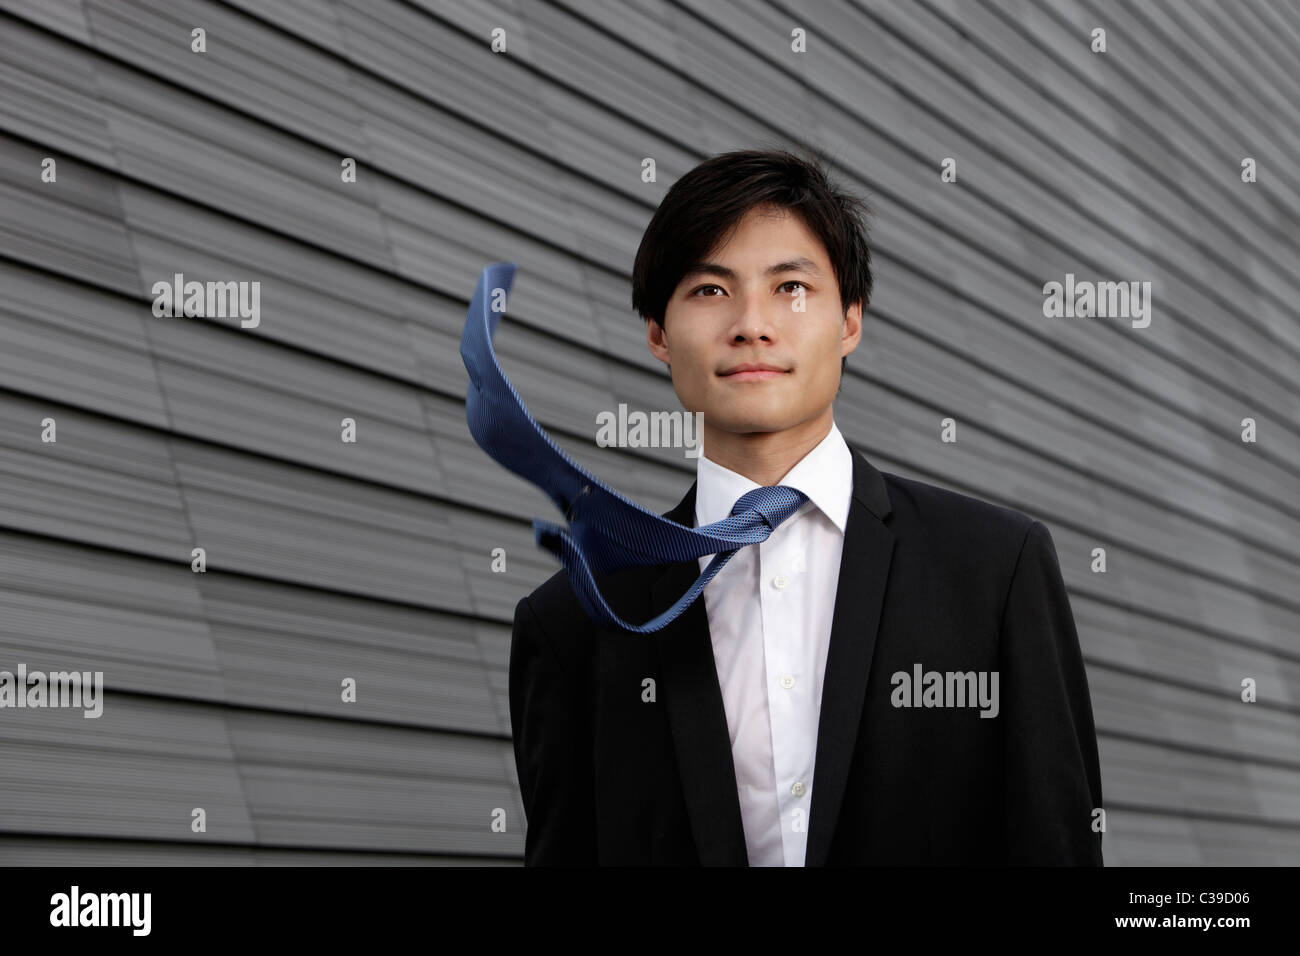 L'homme chinois vêtu d'un costume avec cravate au vent Photo Stock - Alamy